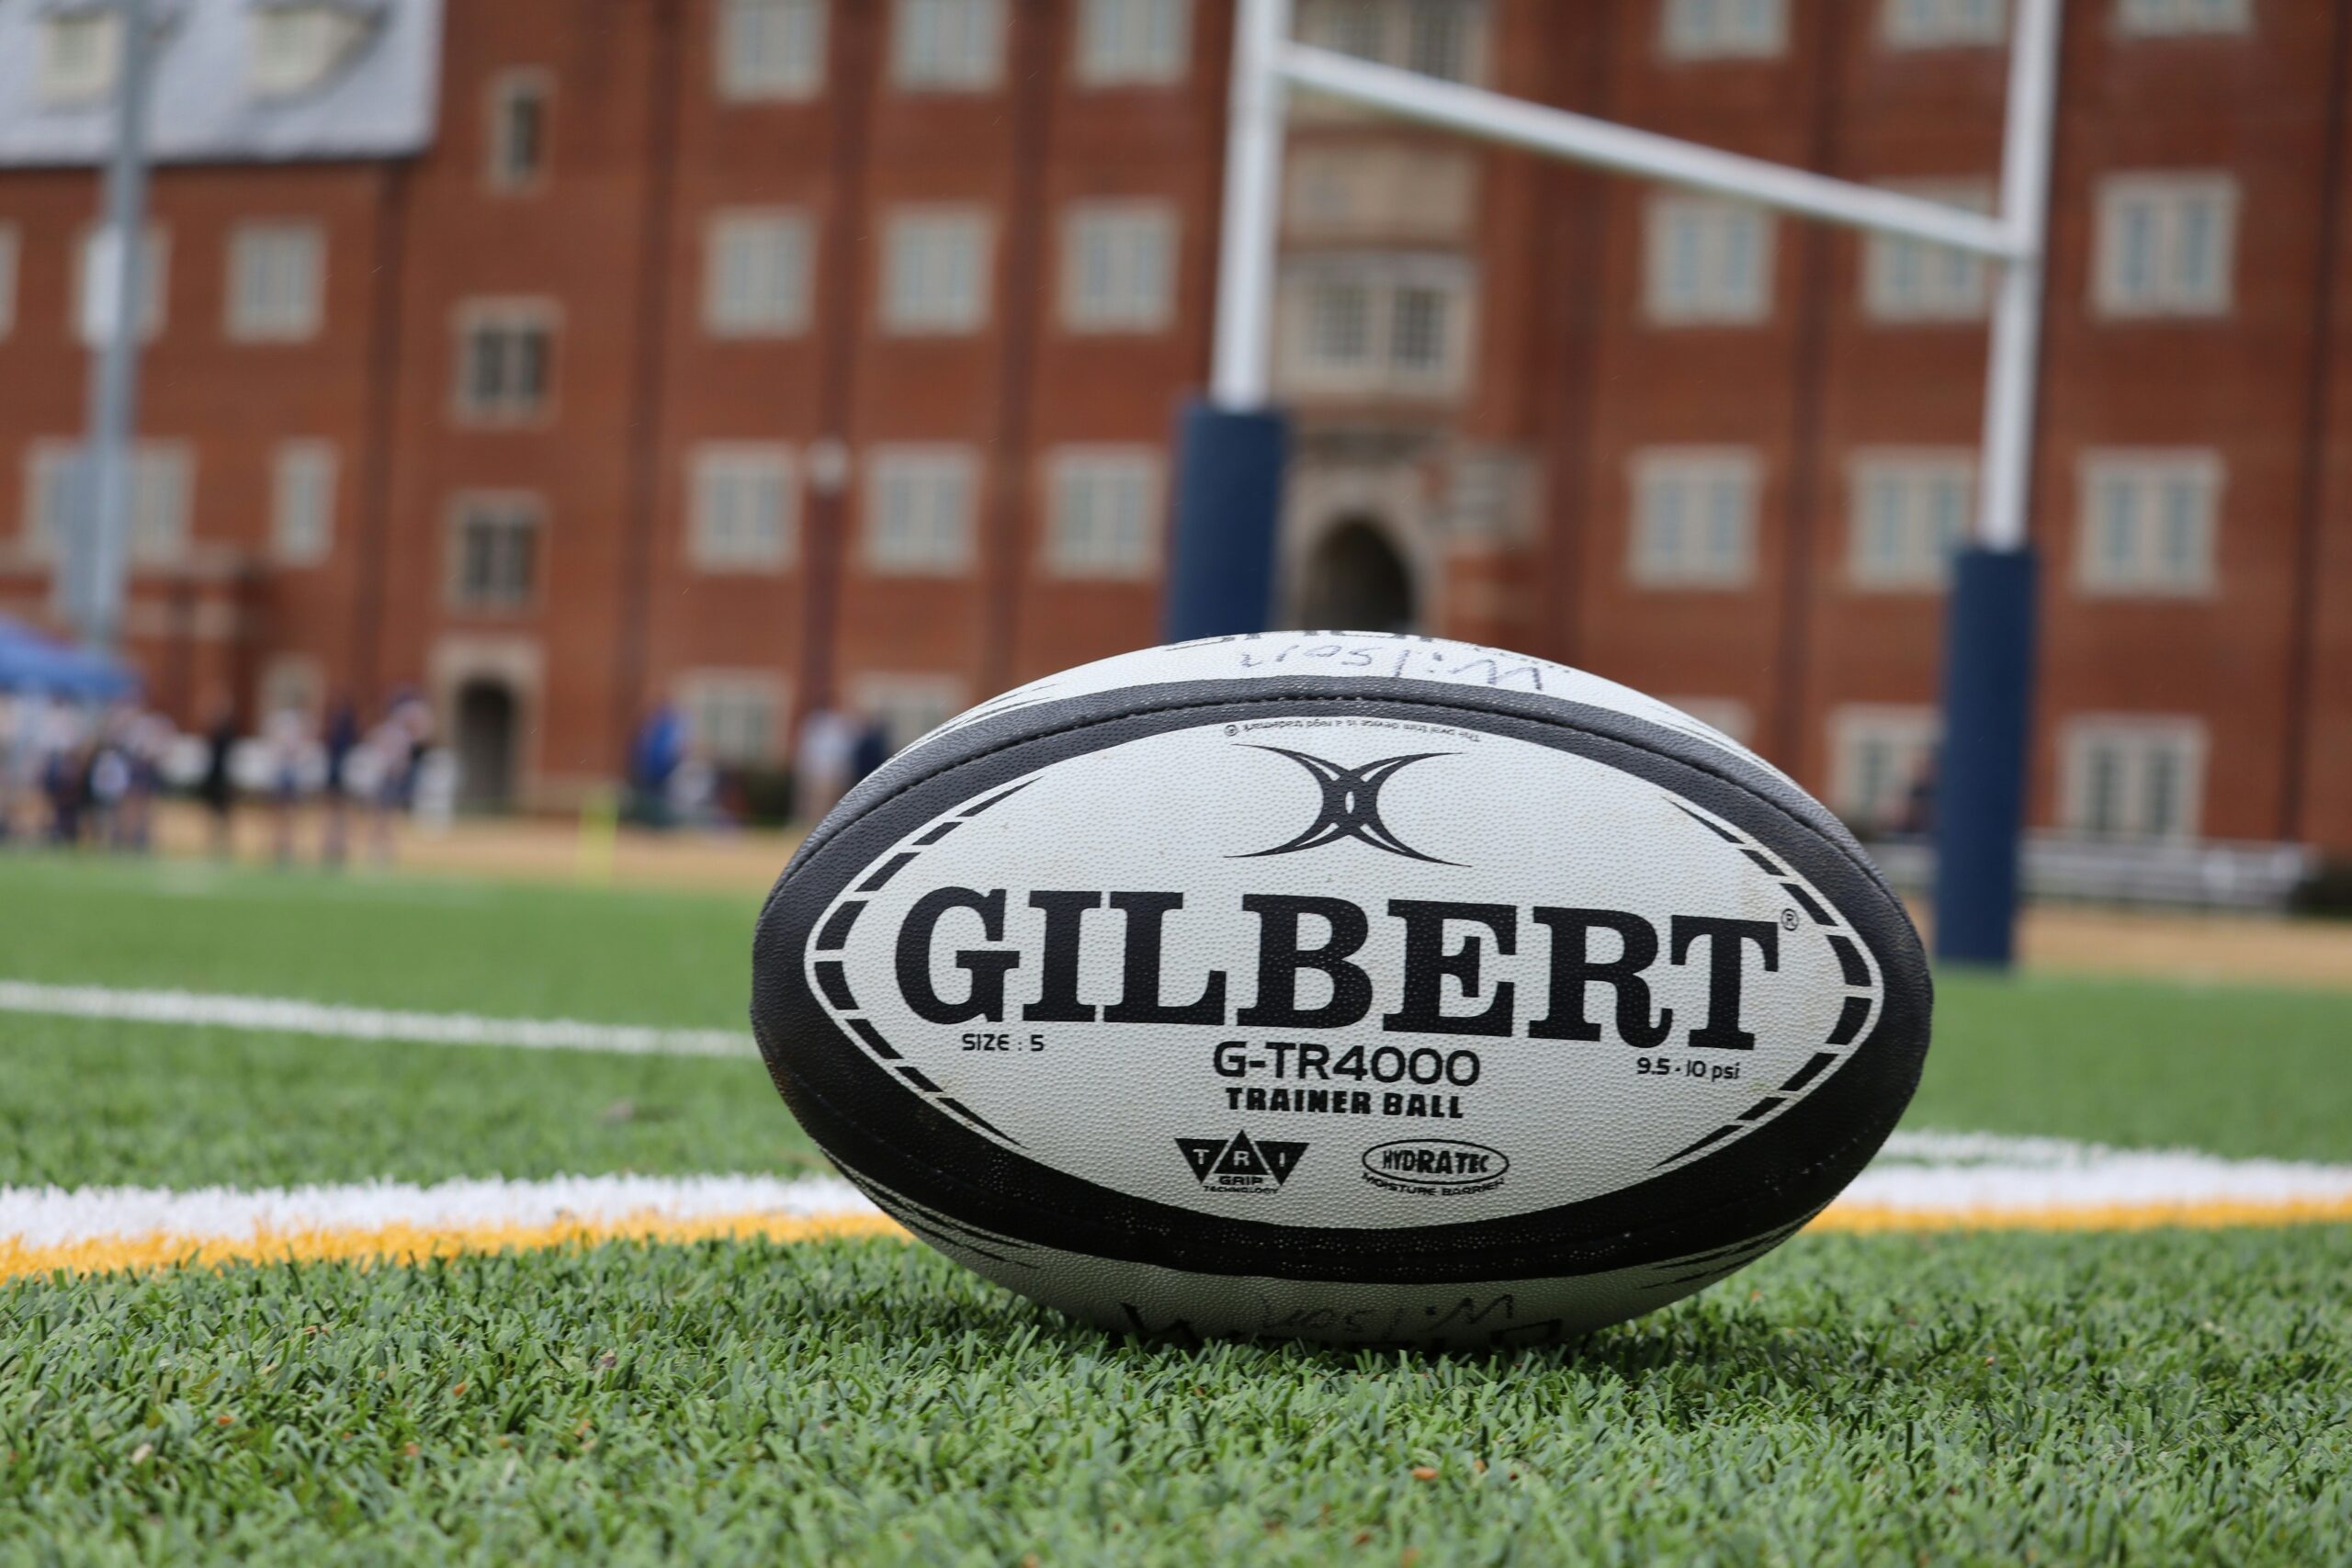 consultez les résultats de la national rugby league (nrl) et suivez toute l'actualité du rugby sur notre site.